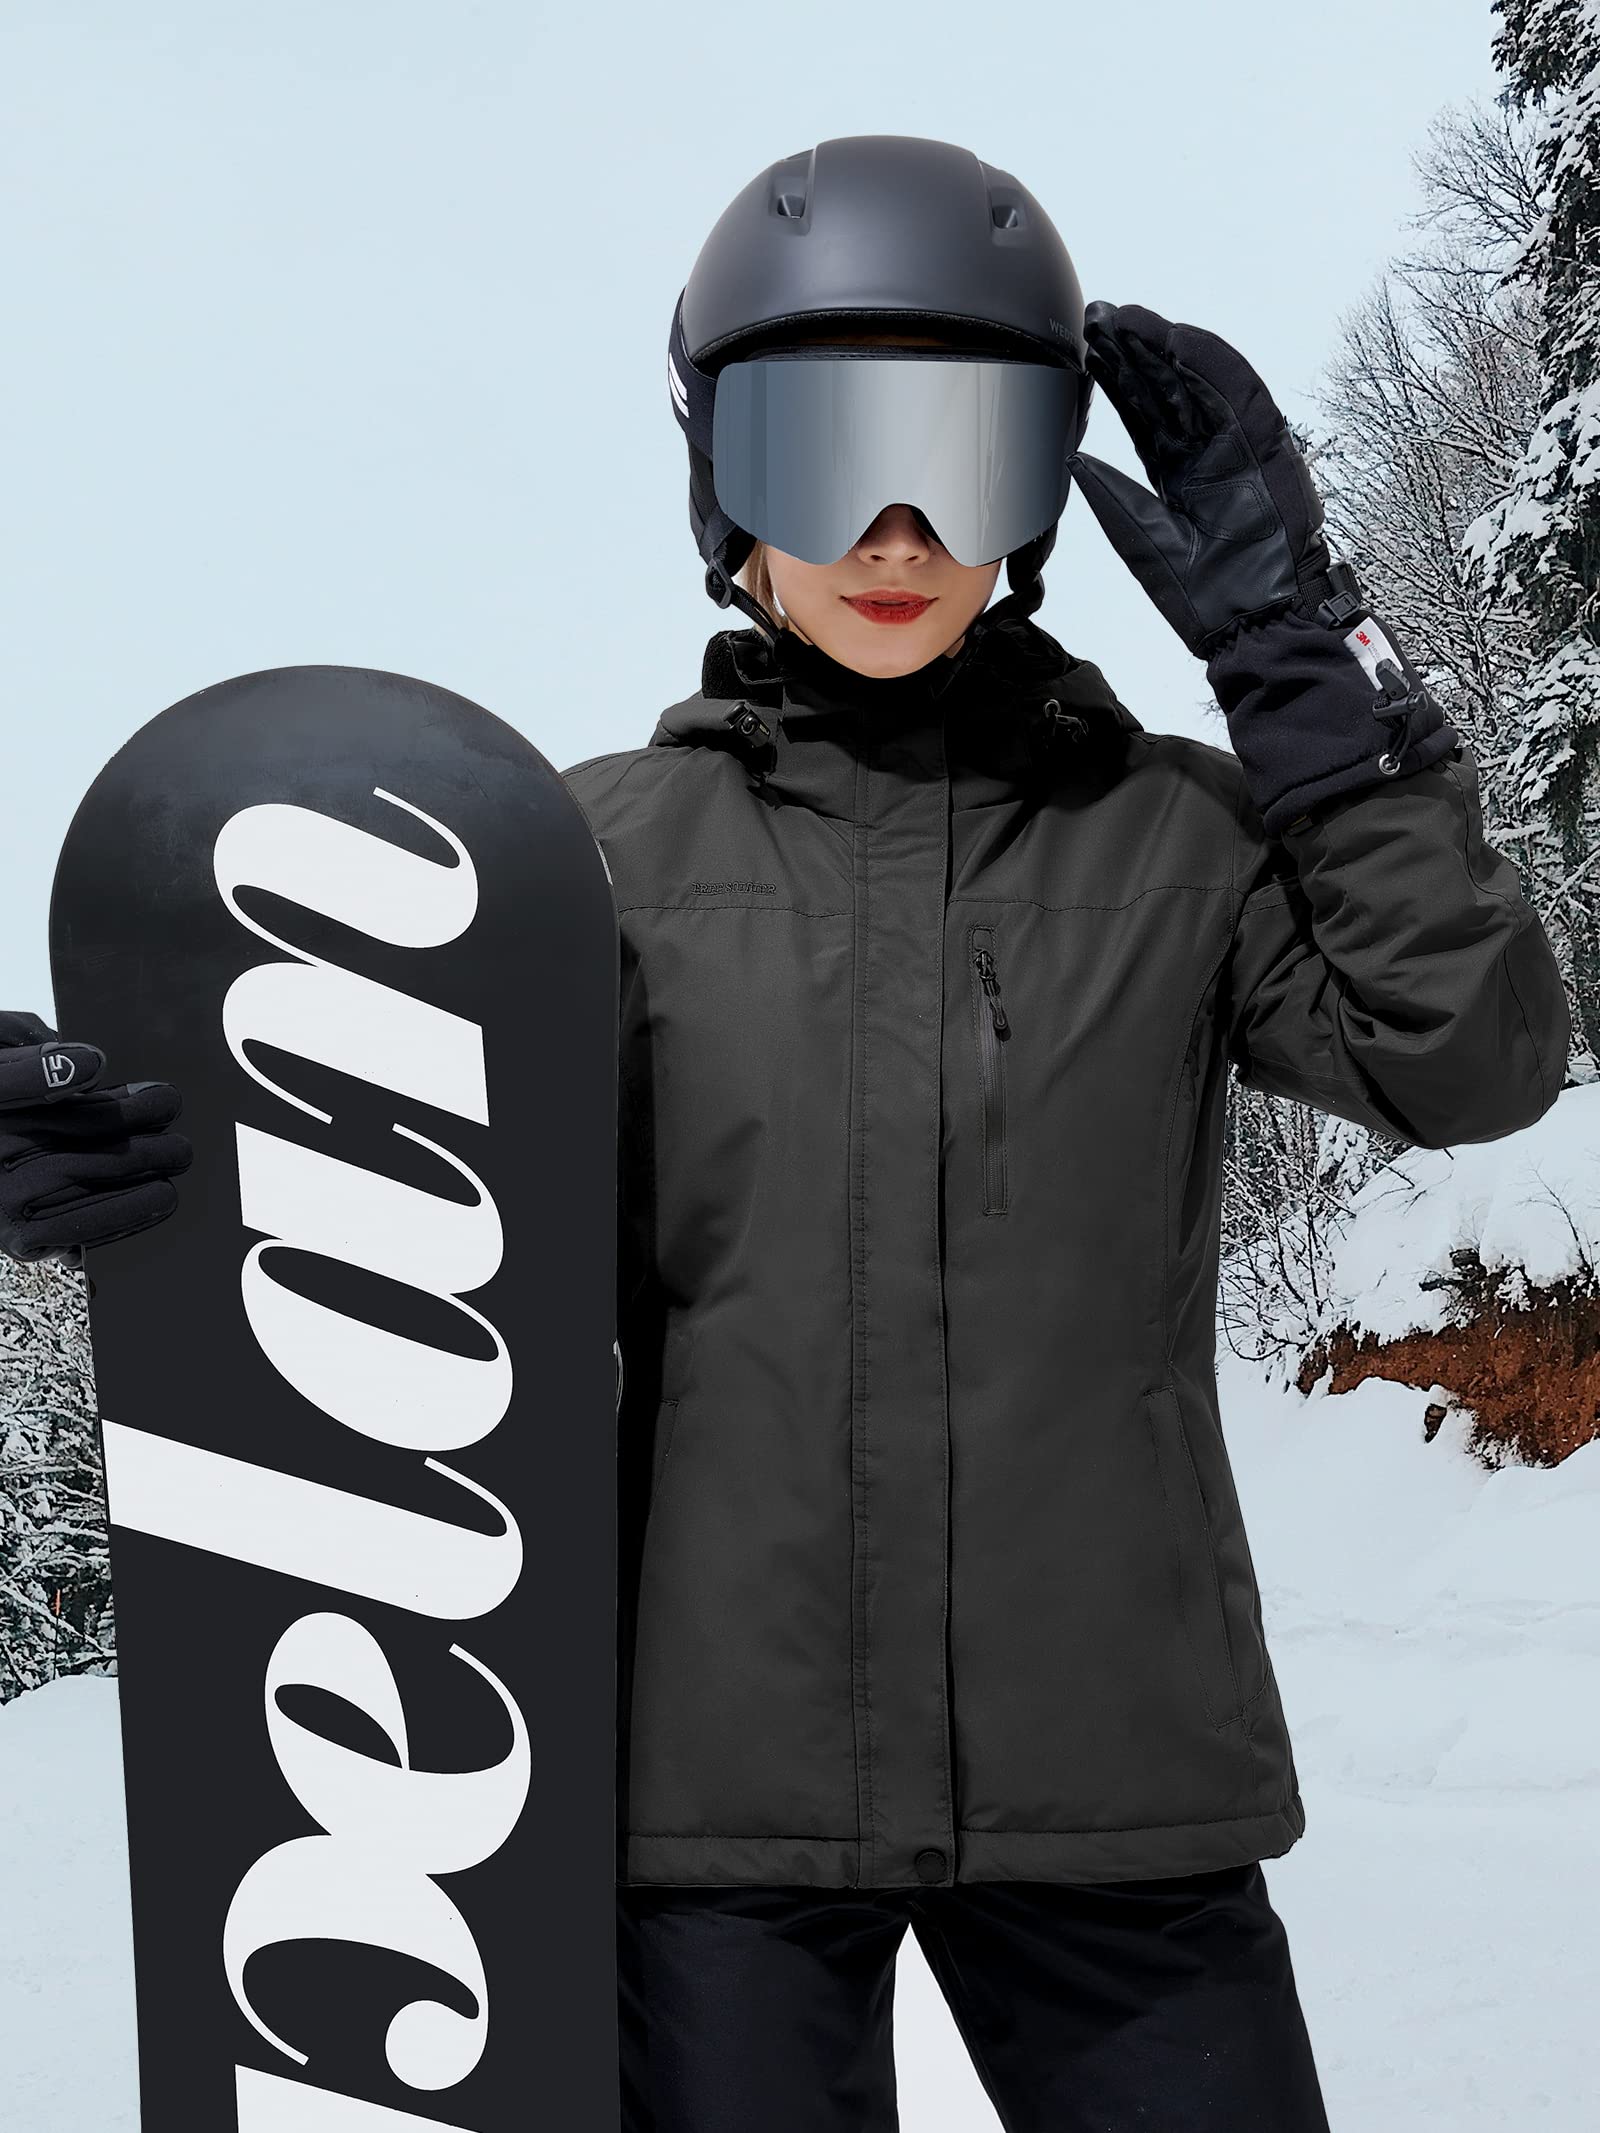 Casco De Seguridad Ski Warm Para Mujer, Tabla De Snowboard P